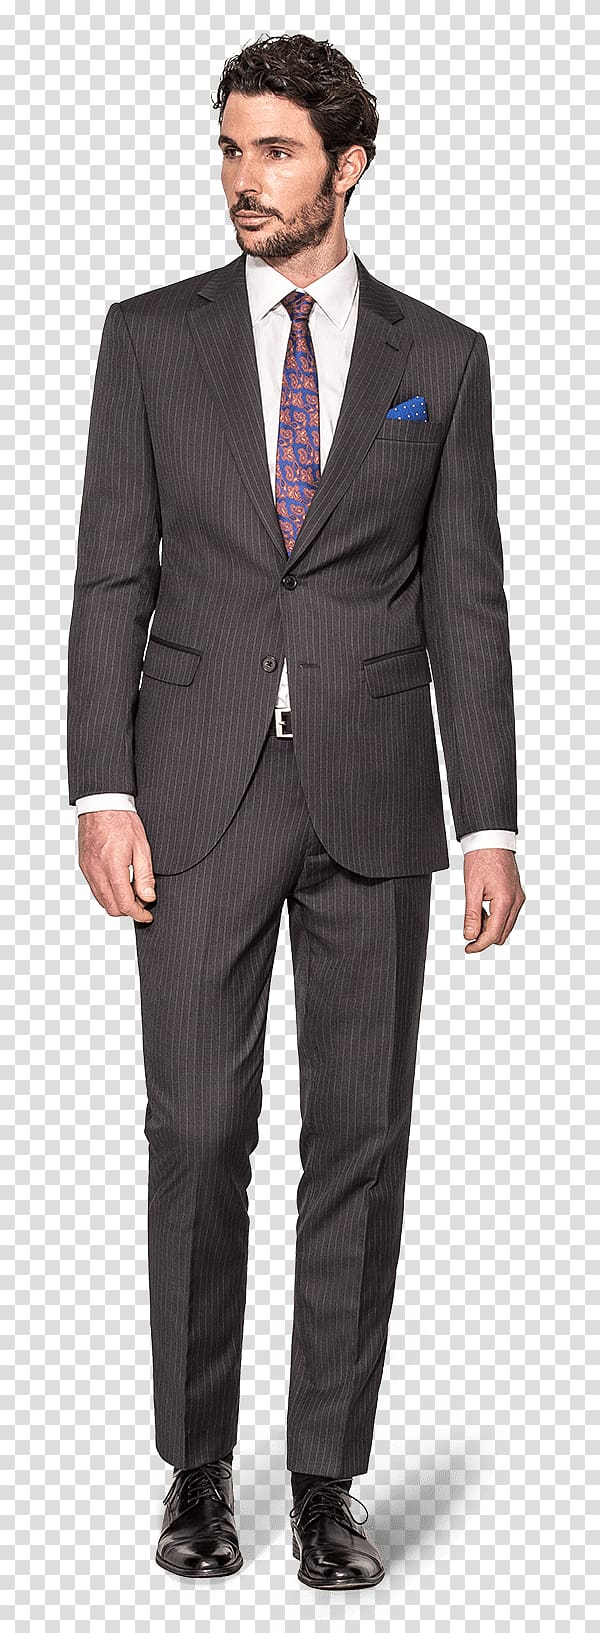 Suit JoS. A. Bank Clothiers Clothing Jacket T. M. Lewin, Striped Suit transparent background PNG clipart